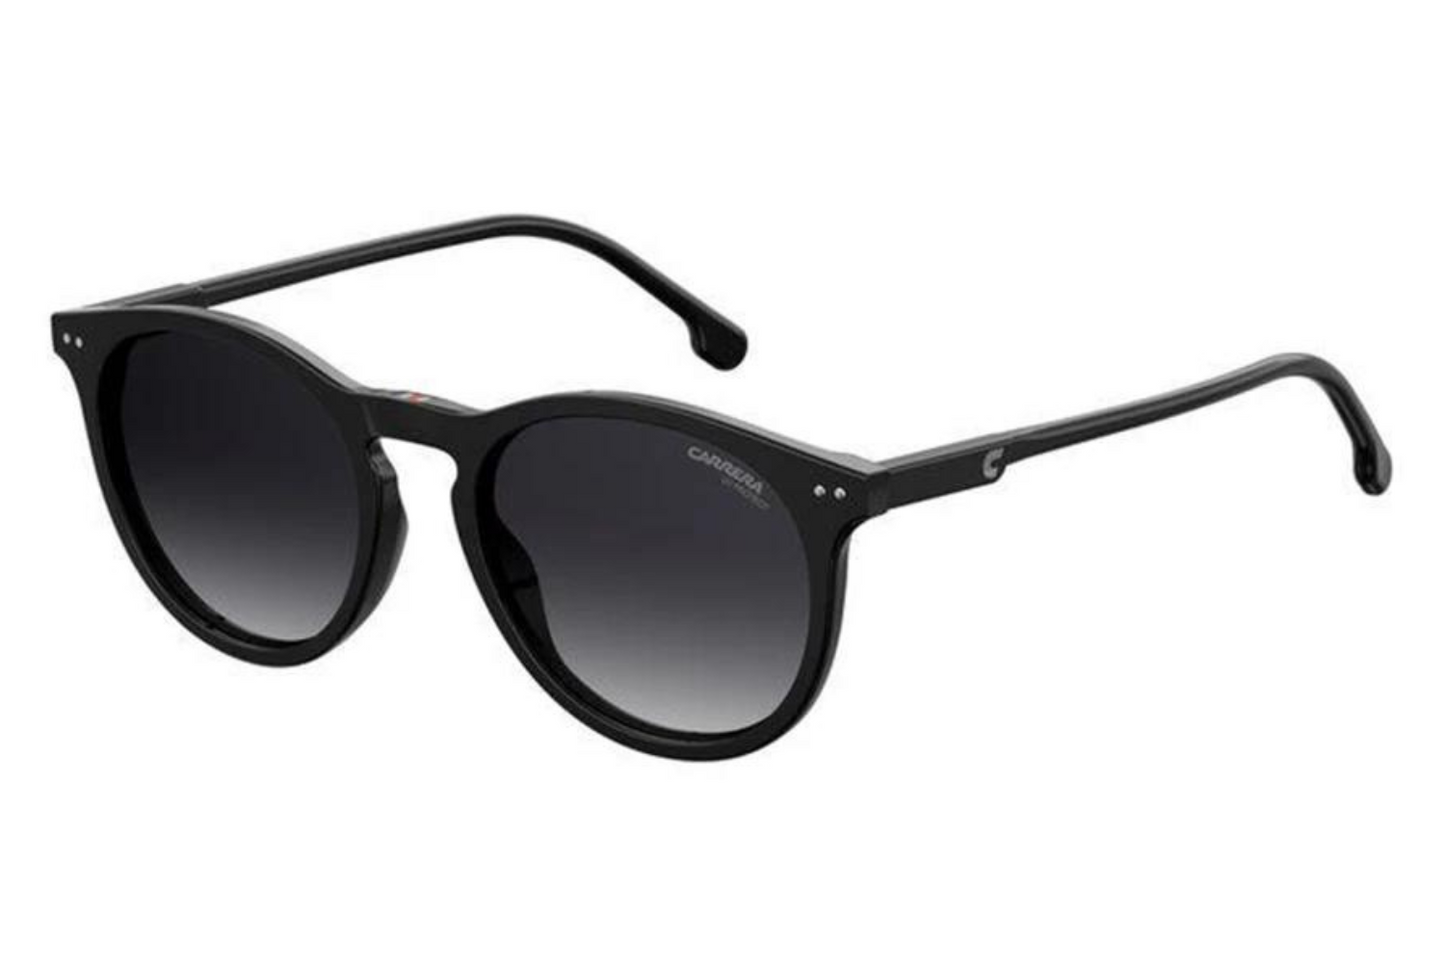 Carrera Sunglasses 2006/T/S